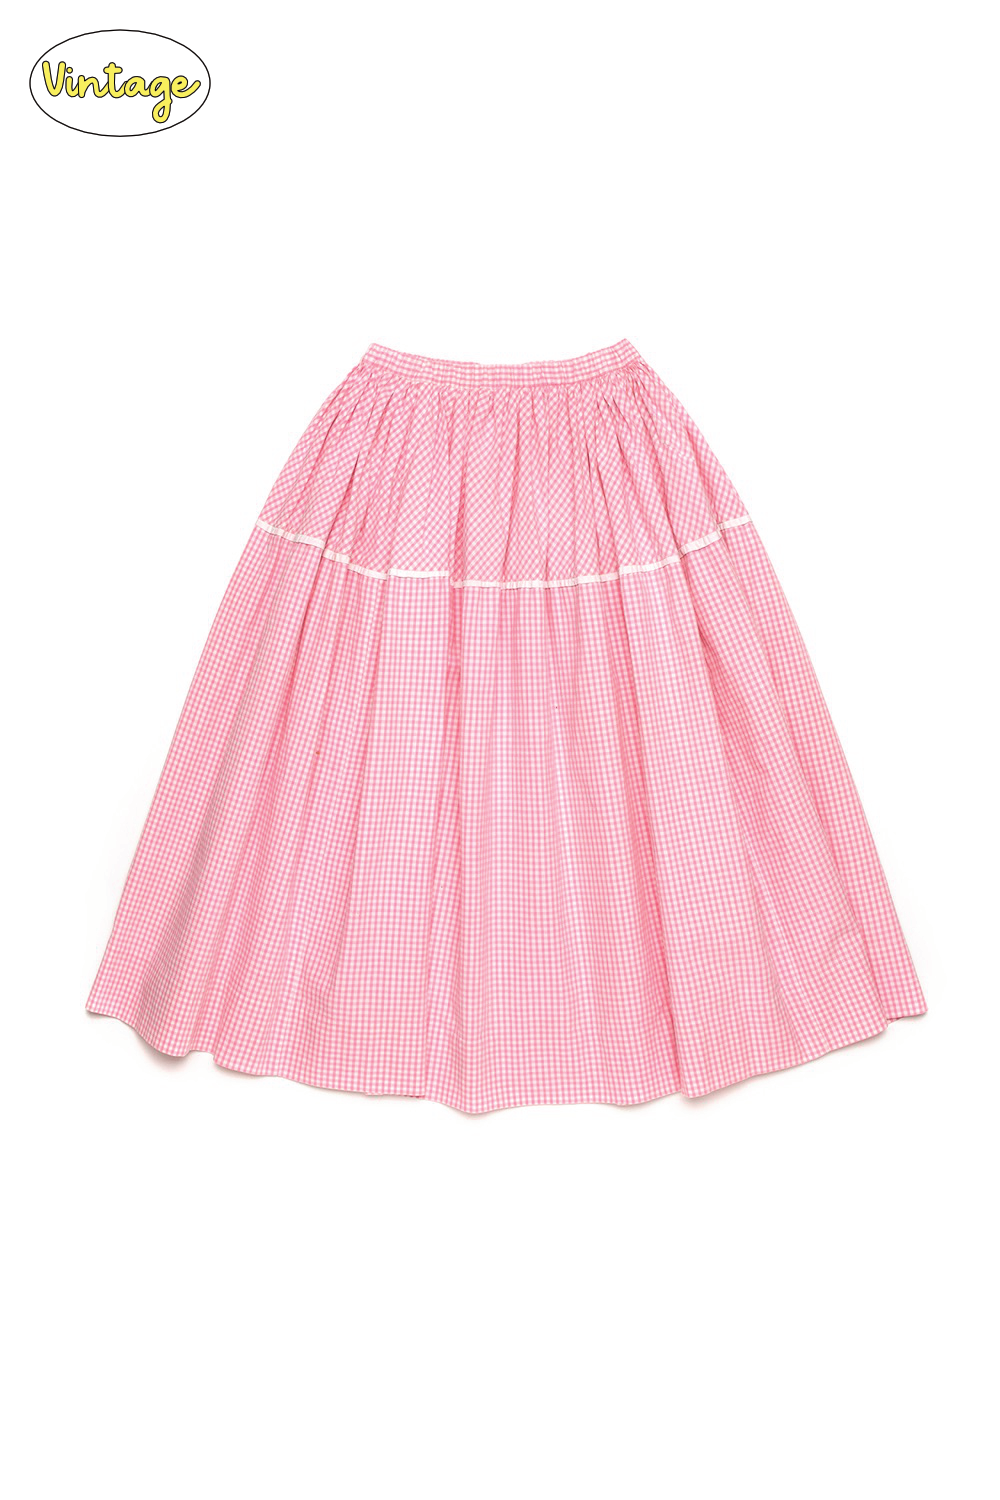 Pink ginham check skirt